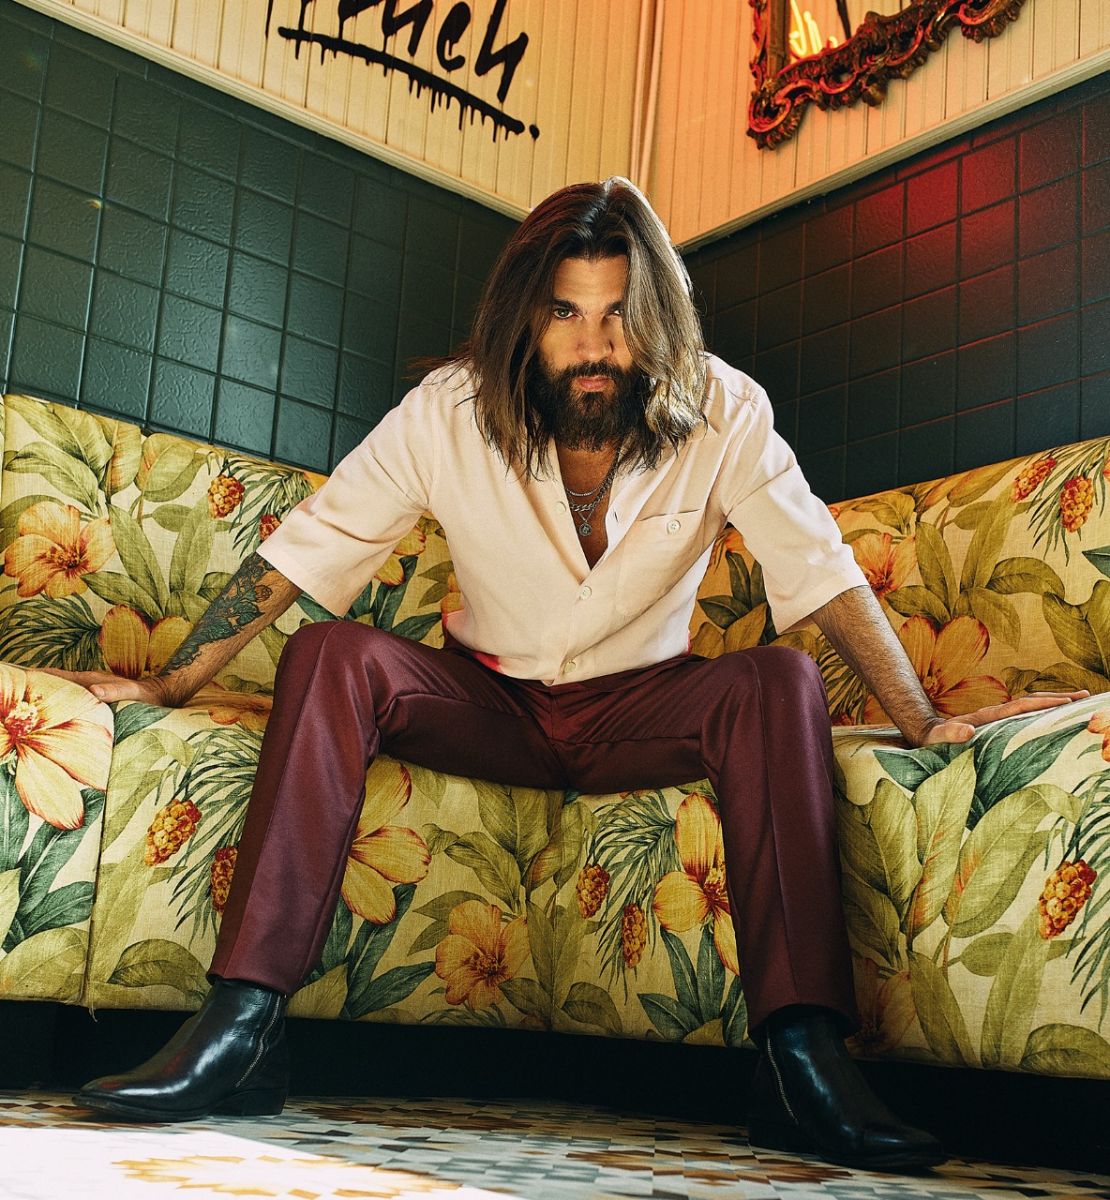 Buena crítica ha recibido el álbum “Origen”, de Juanes, una propuesta atrevida y exquisita